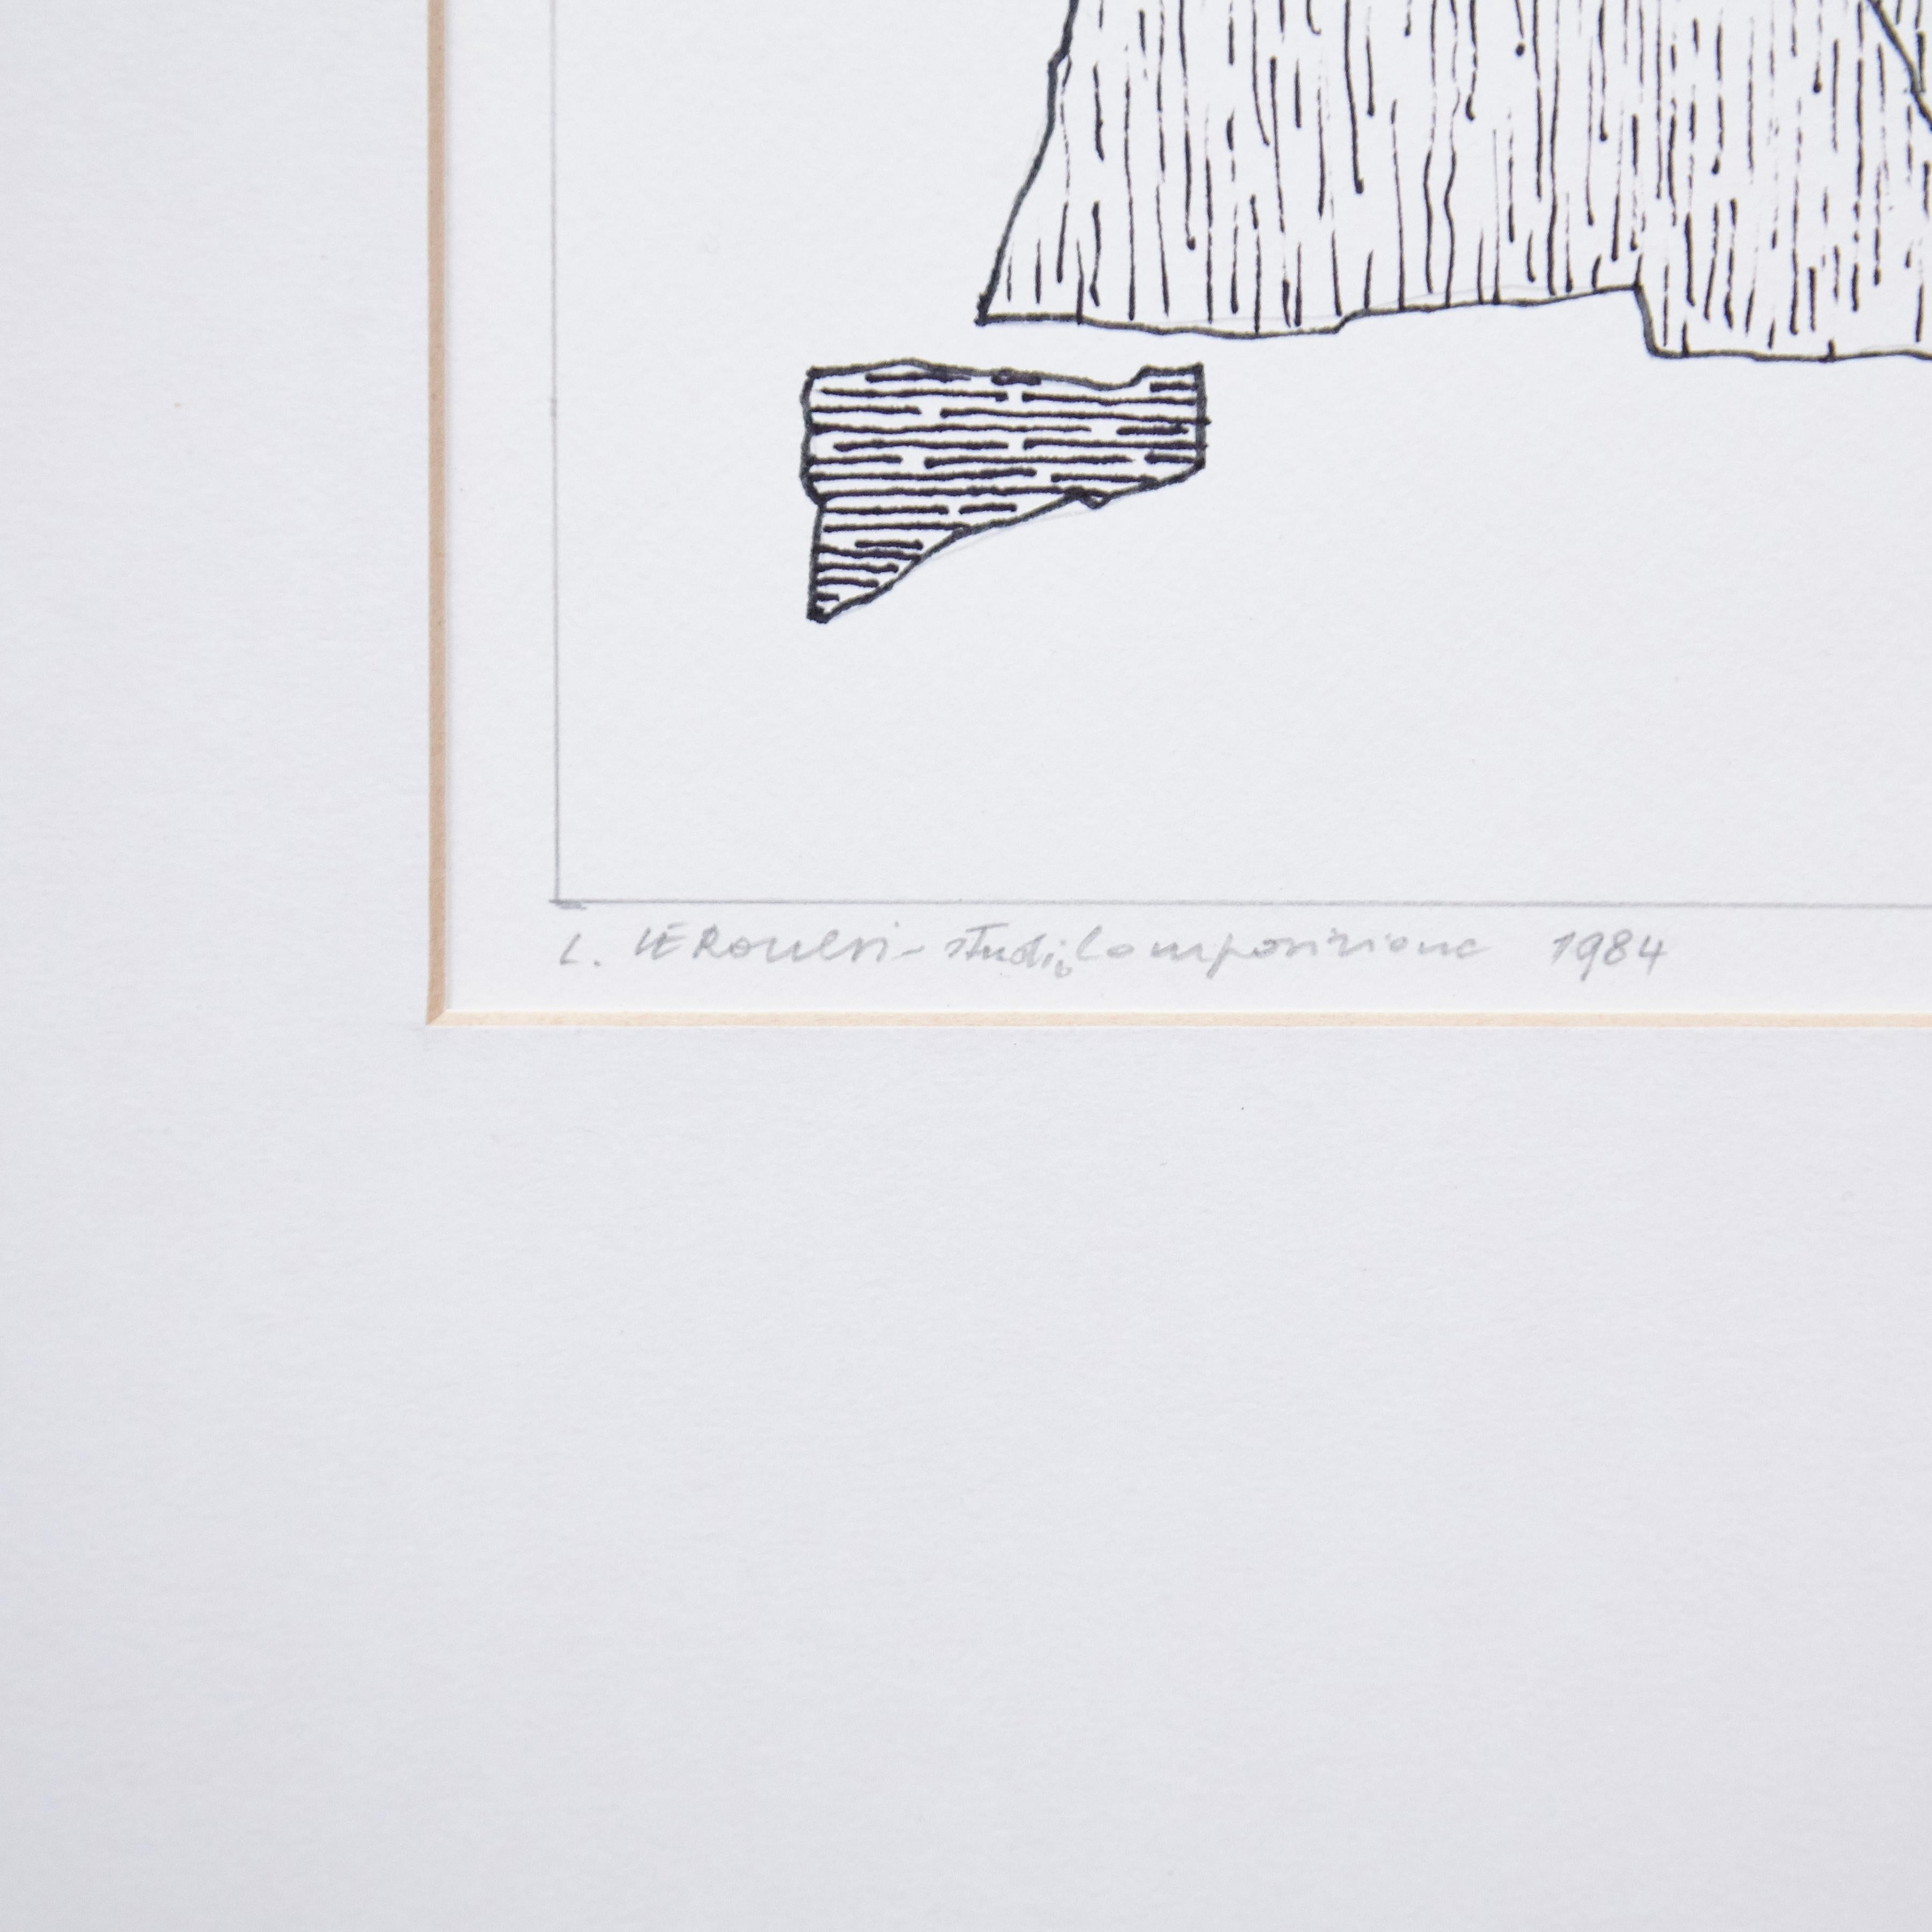 'Composizione' disegno originale di Luigi Veronesi, circa 1984.

Pastello su carta.

In buone condizioni originali.

Luigi Veronesi (1908-1998) è stato un fotografo, pittore, scenografo e regista italiano. Veronesi fu un artista polivalente ed